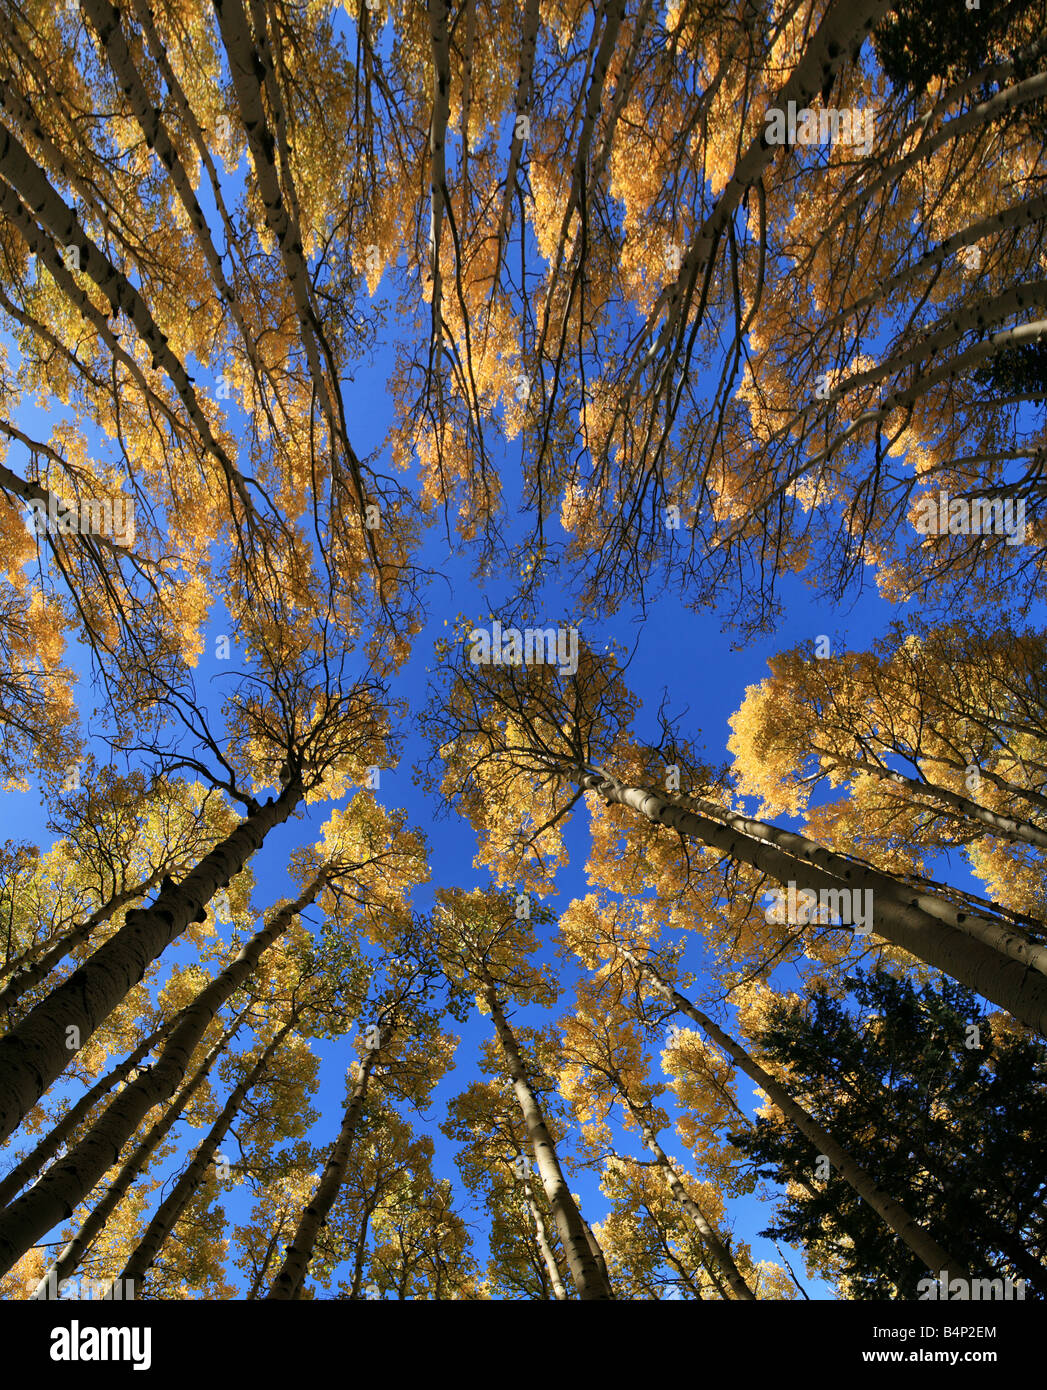 Ampio angolo di visione fino a Aspen (Populus tremuloides) Grove in autunno con foglie di giallo Foto Stock